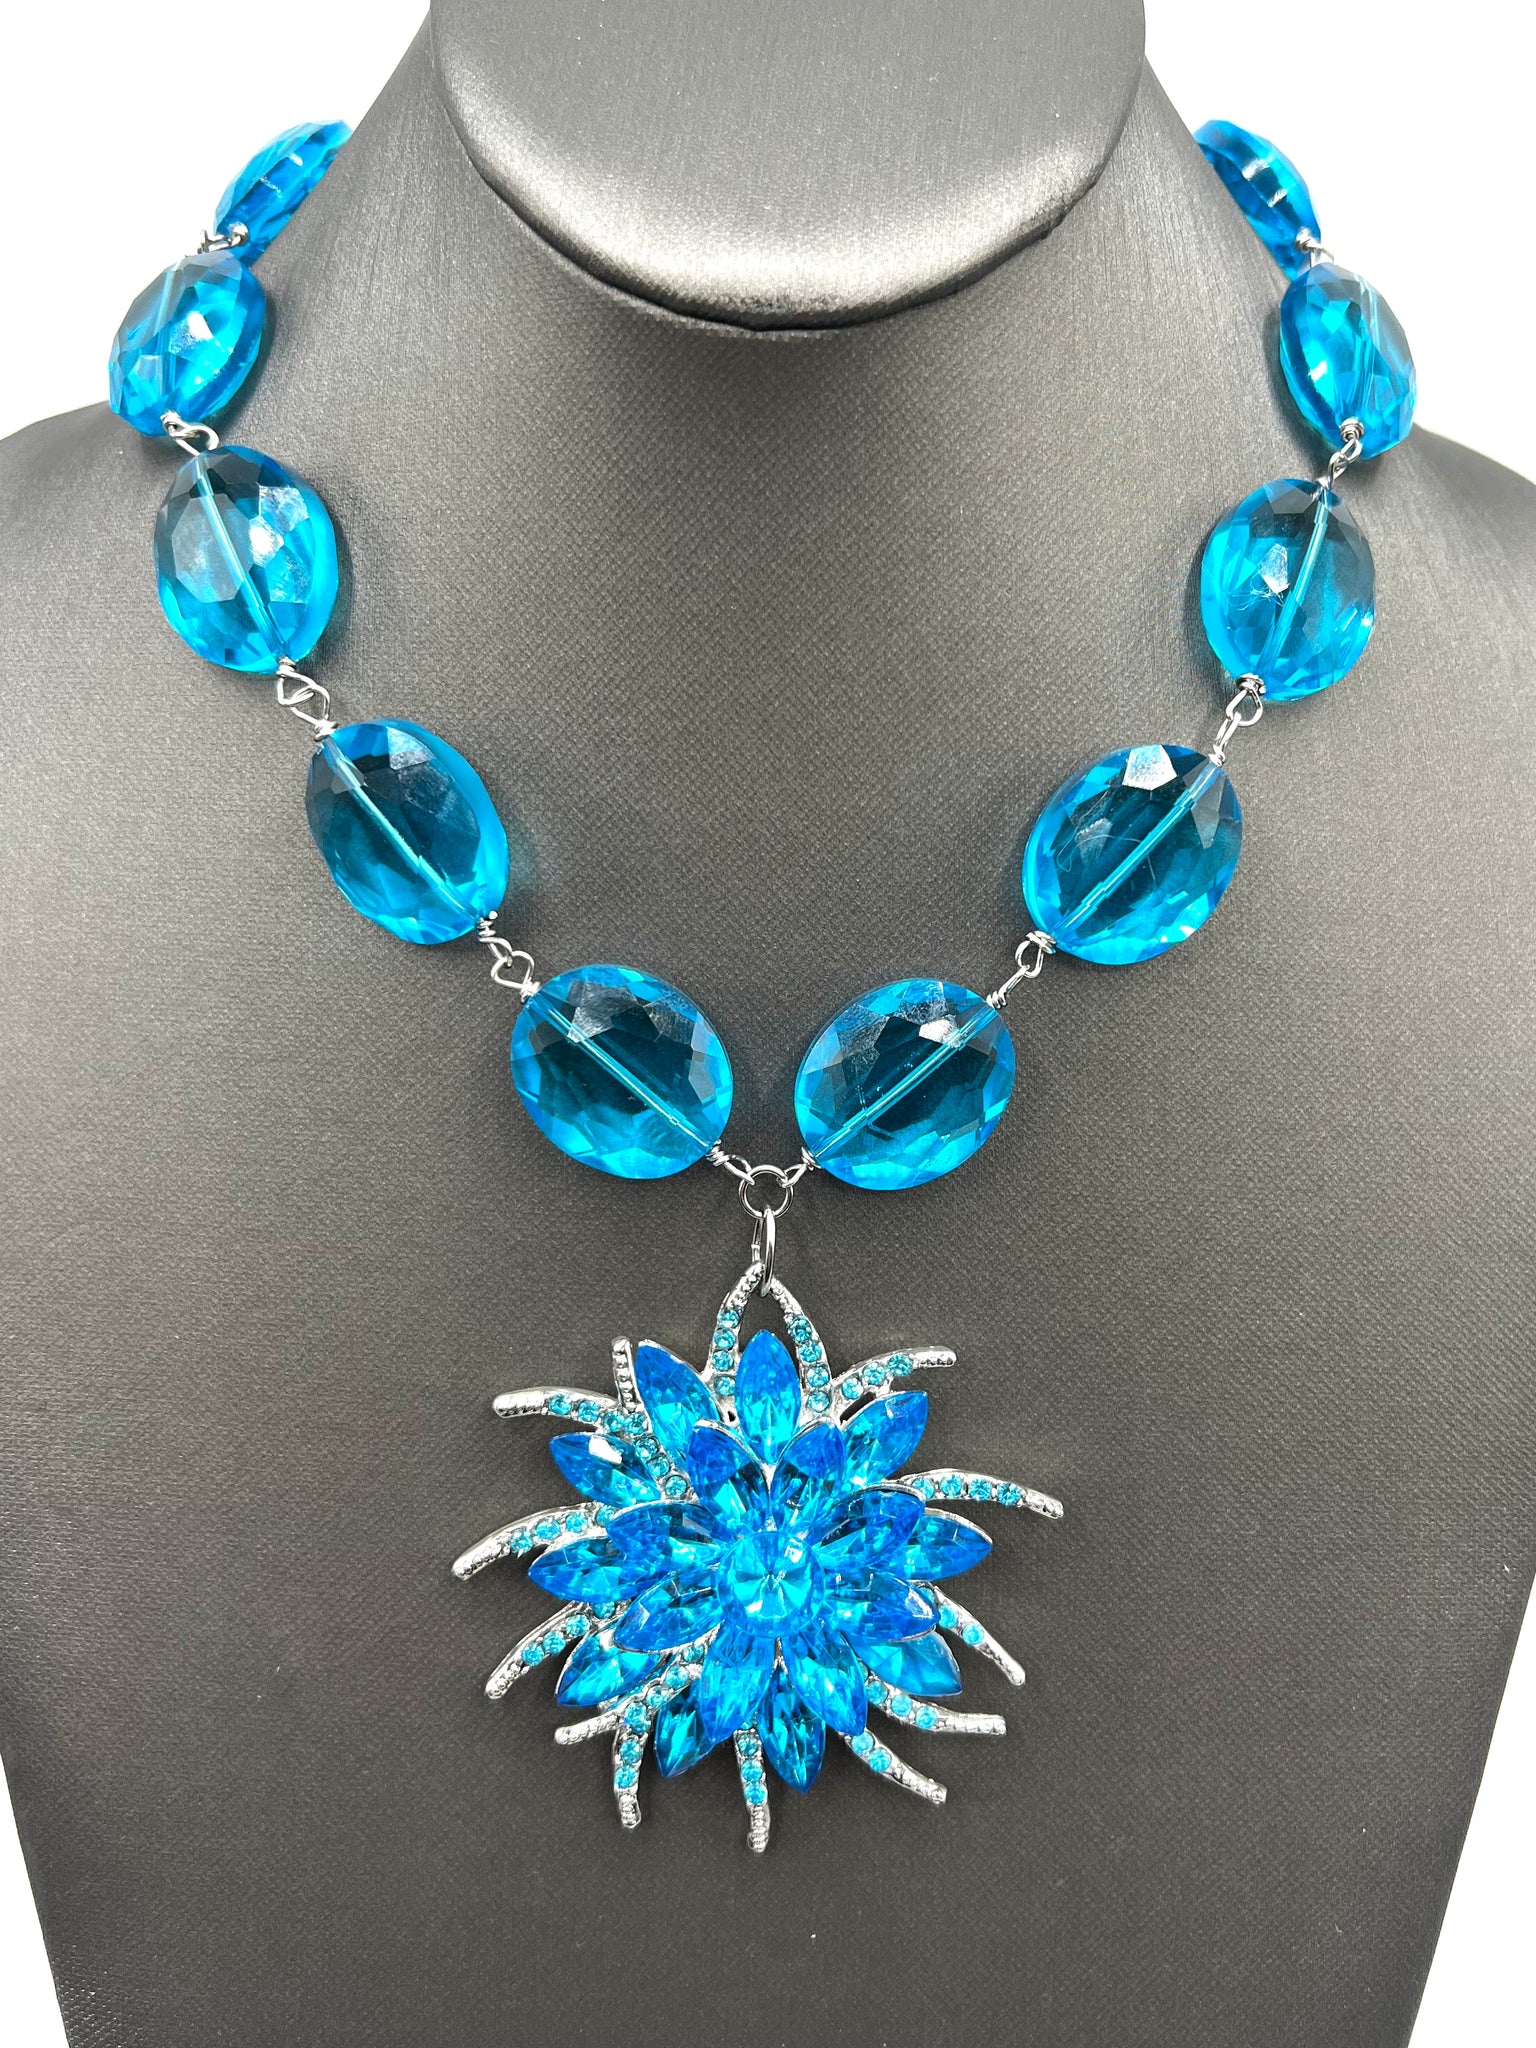 Aqua starburst necklace